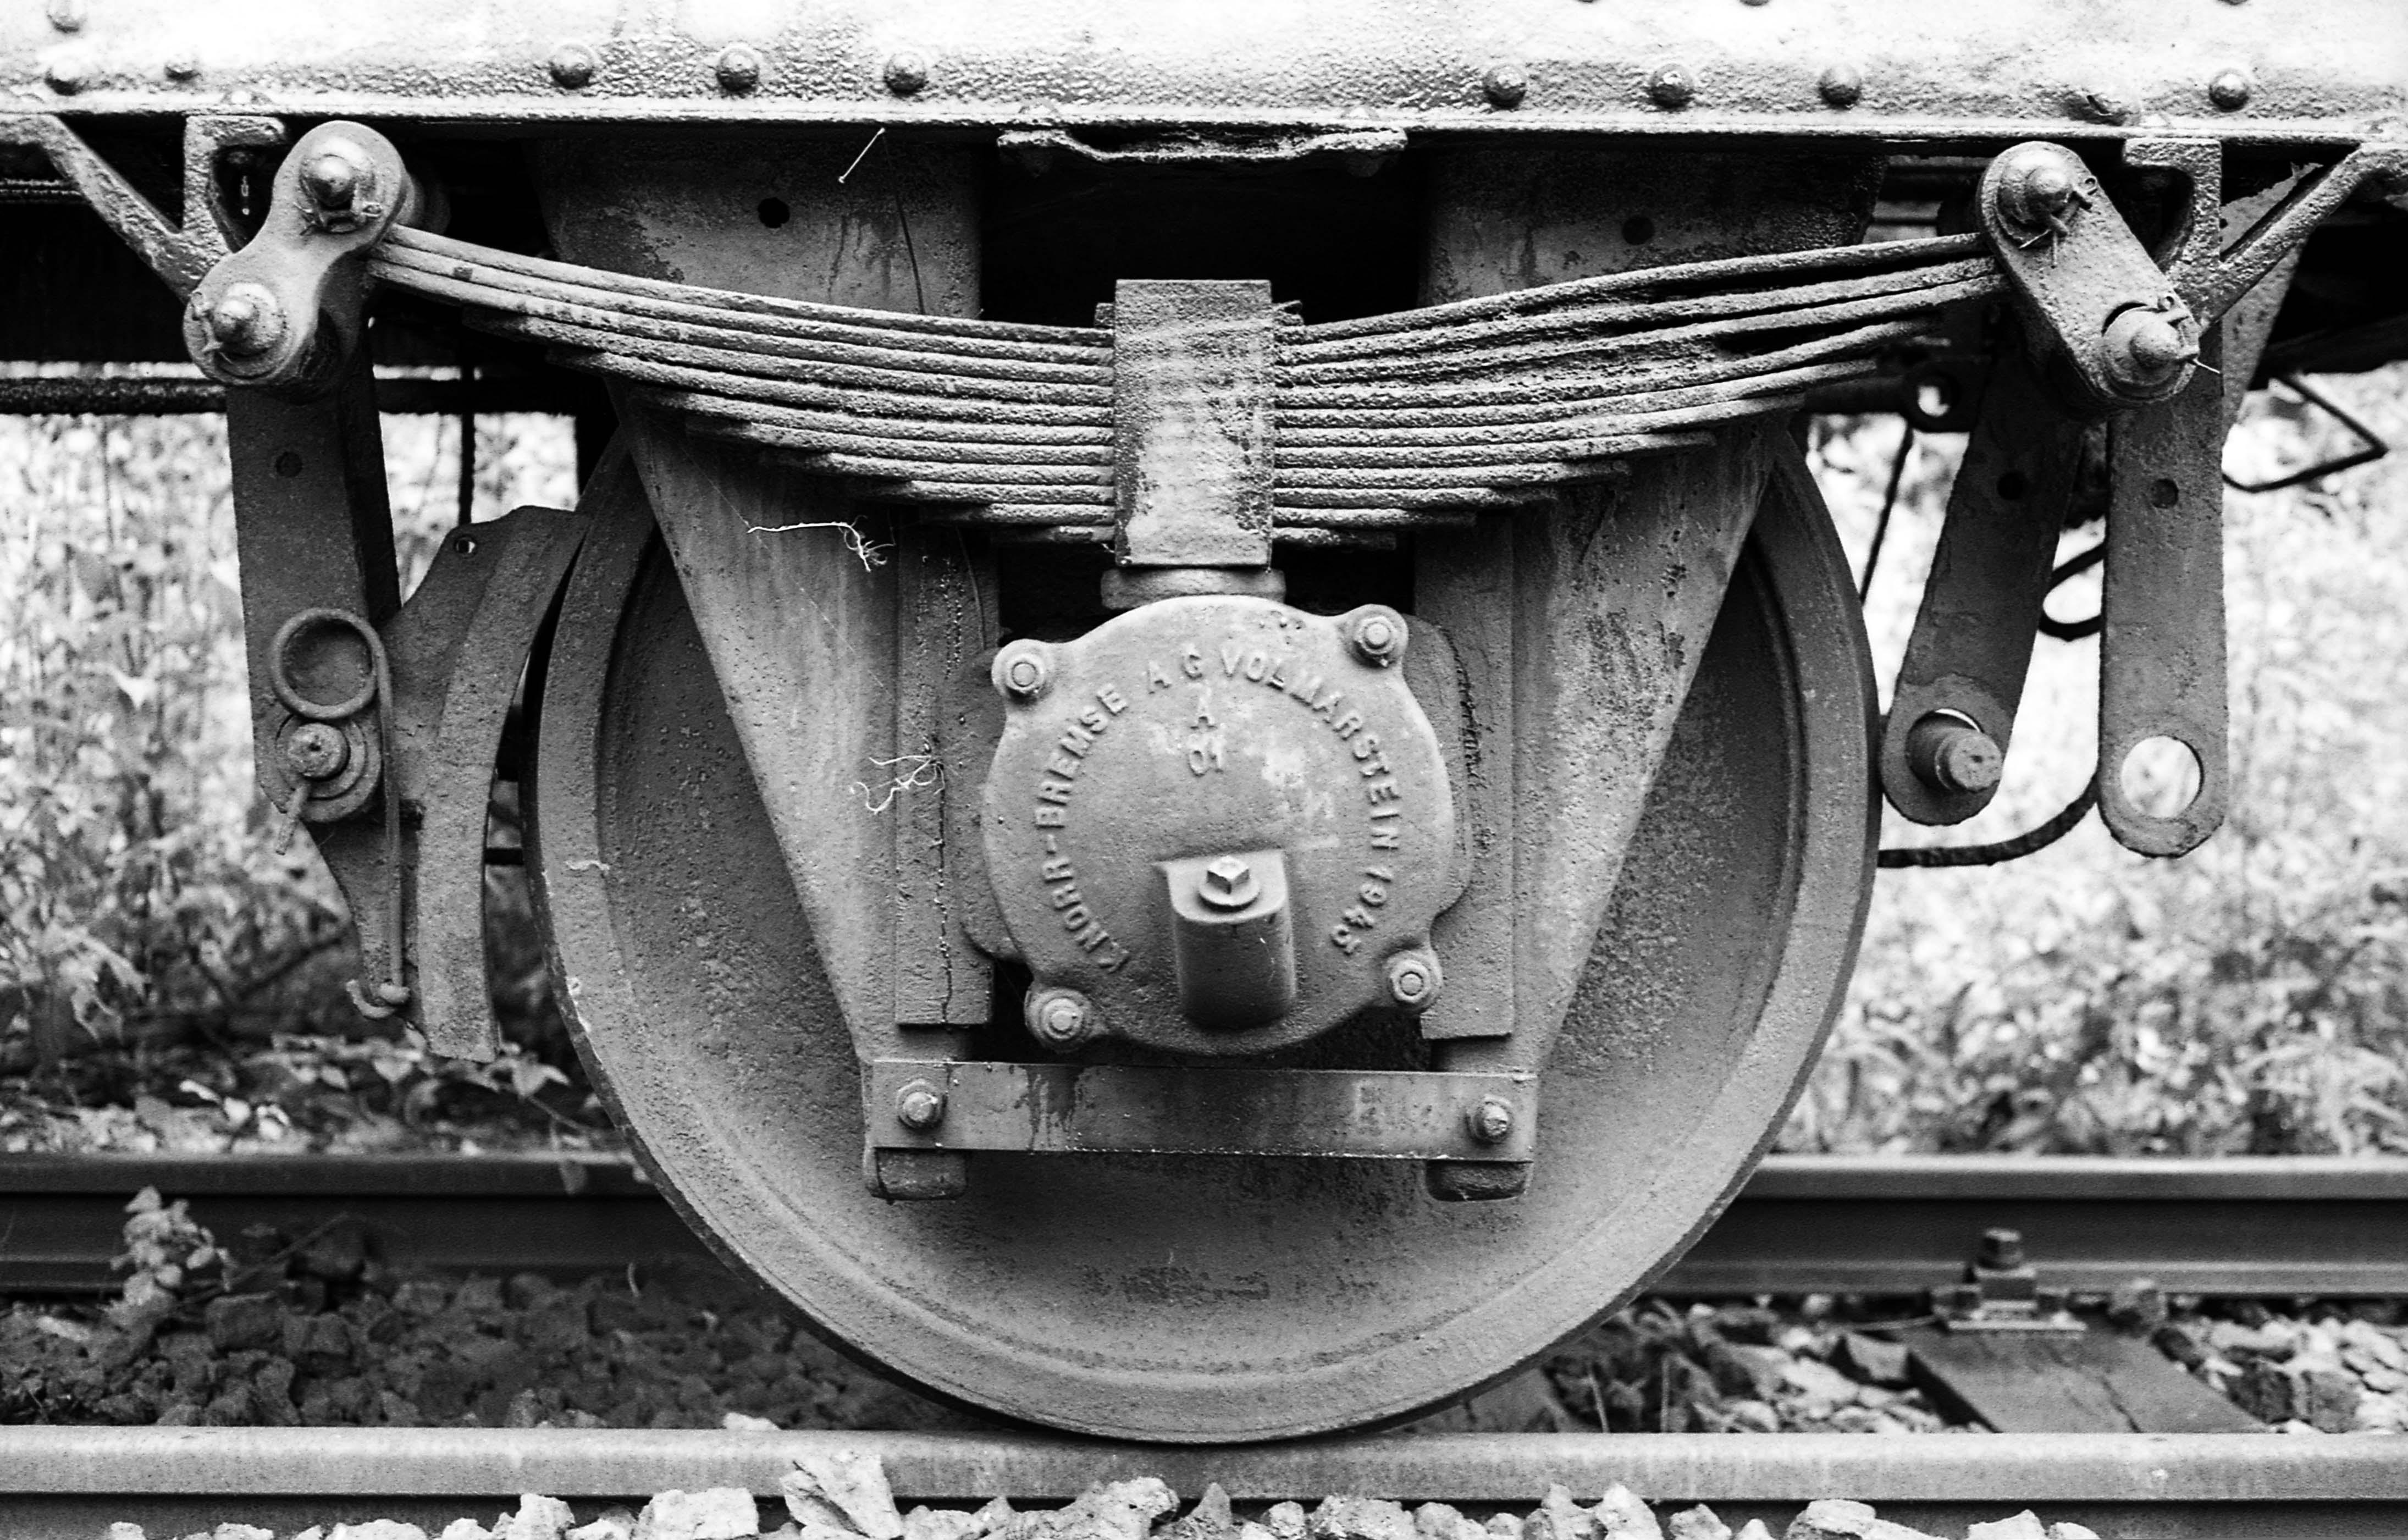 Kokerei Zollverein train wheel - Essen, Germany - 2001